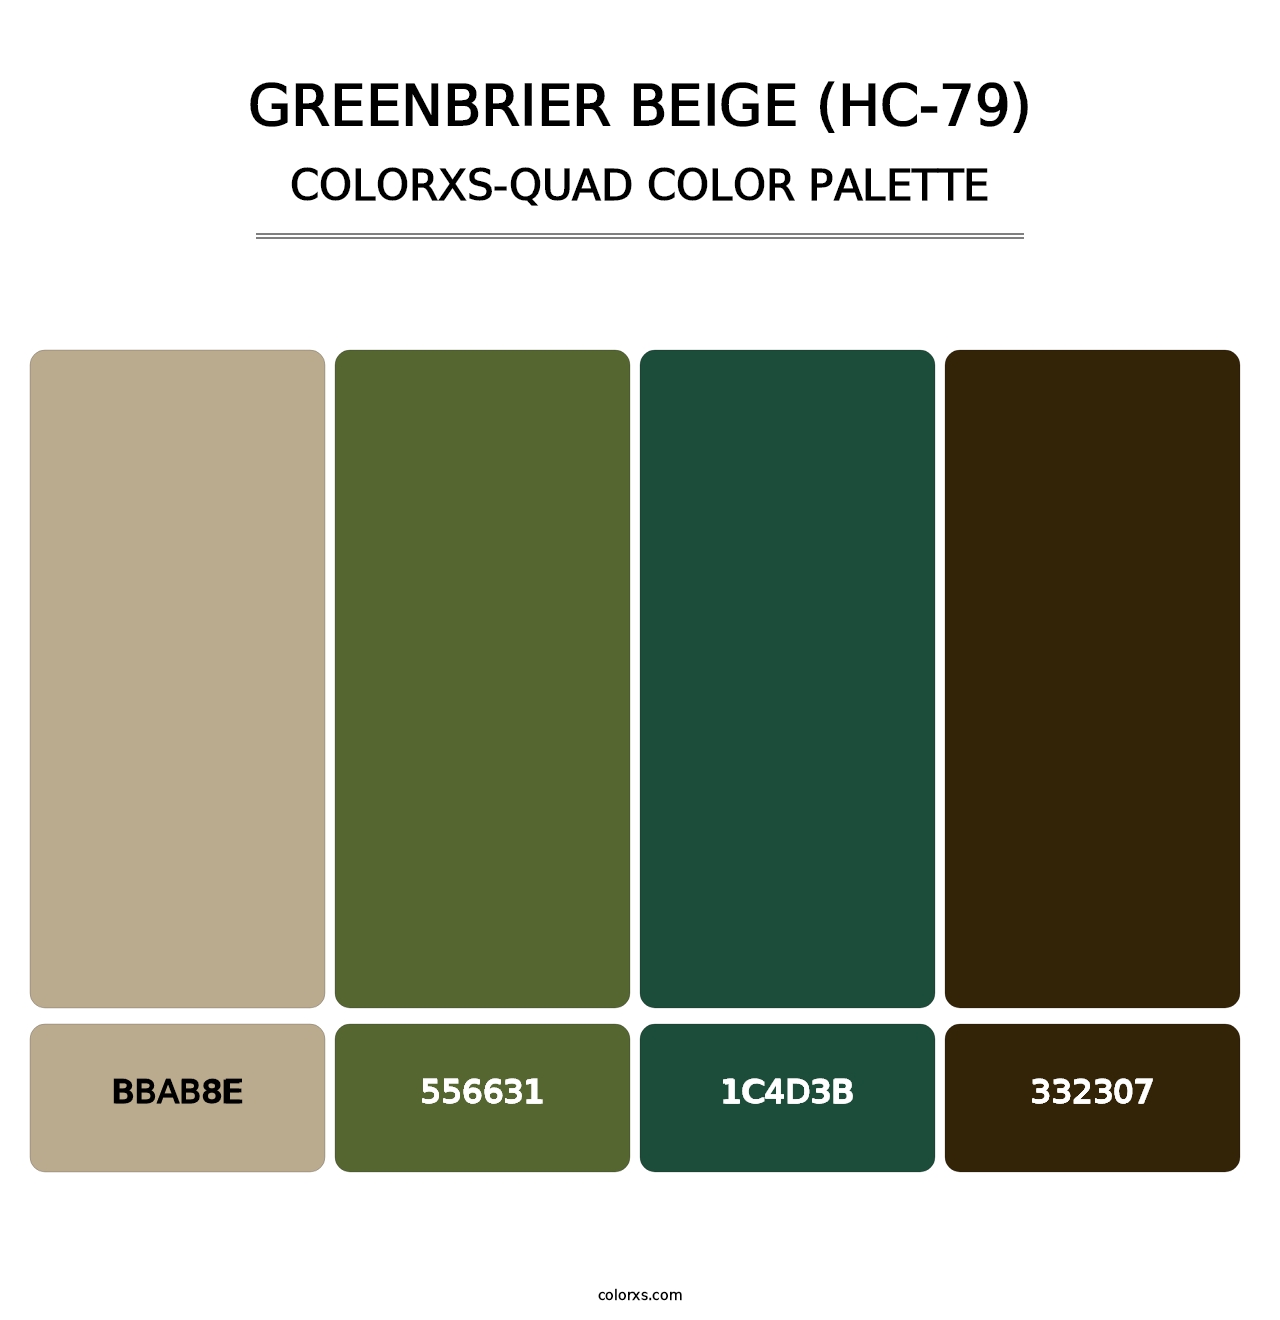 Greenbrier Beige (HC-79) - Colorxs Quad Palette